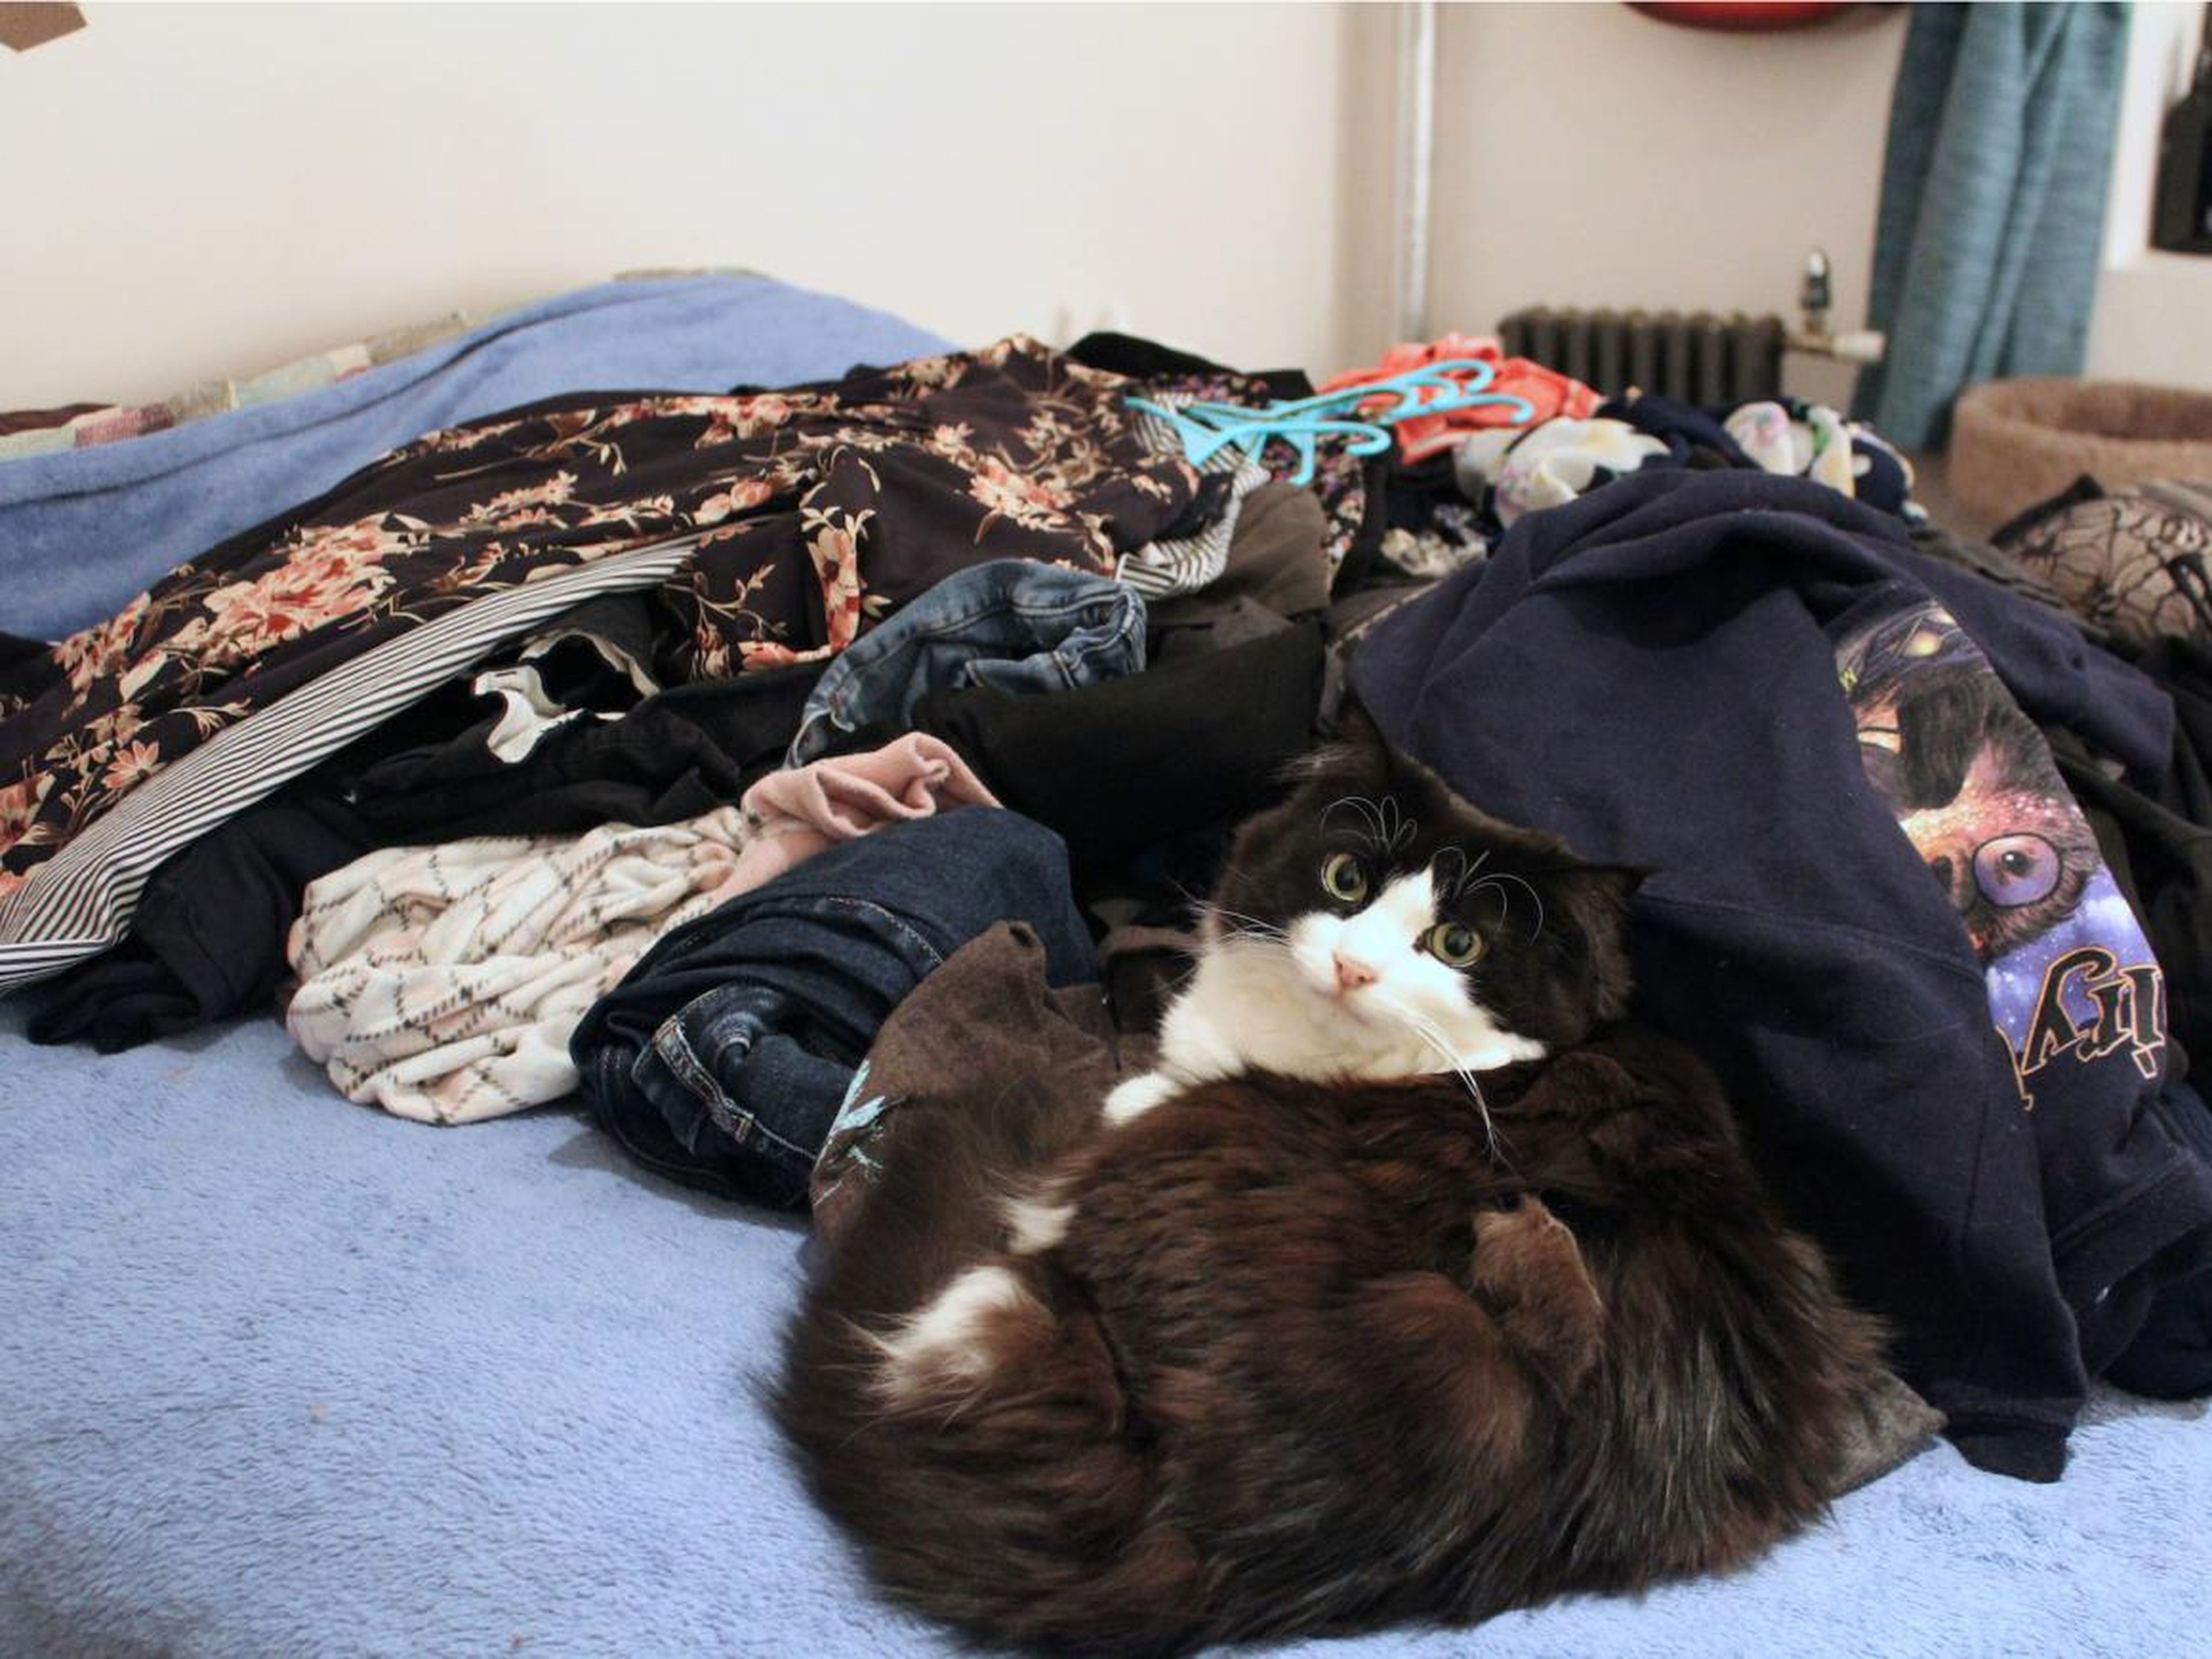 Mi gato posa serenamente en medio de una pila de ropa